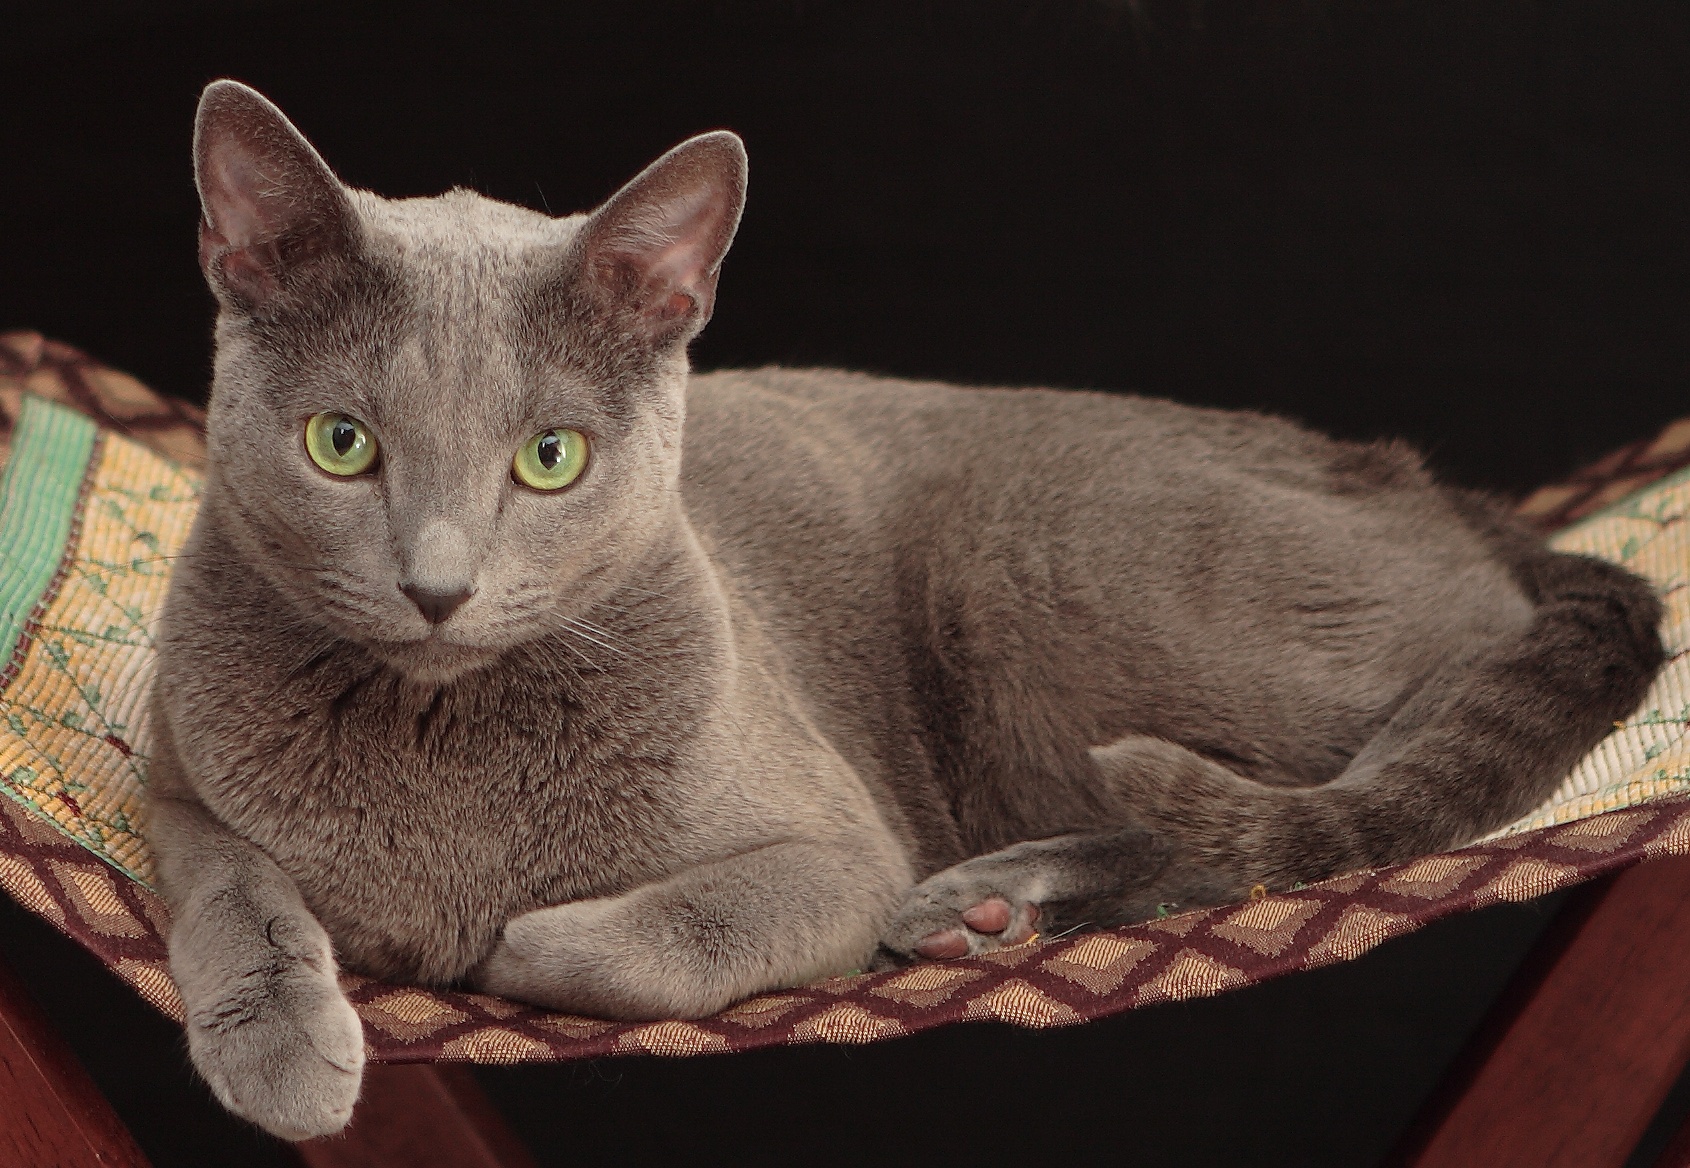 Русская голубая кошка: фото, о породе, характере, здоровье